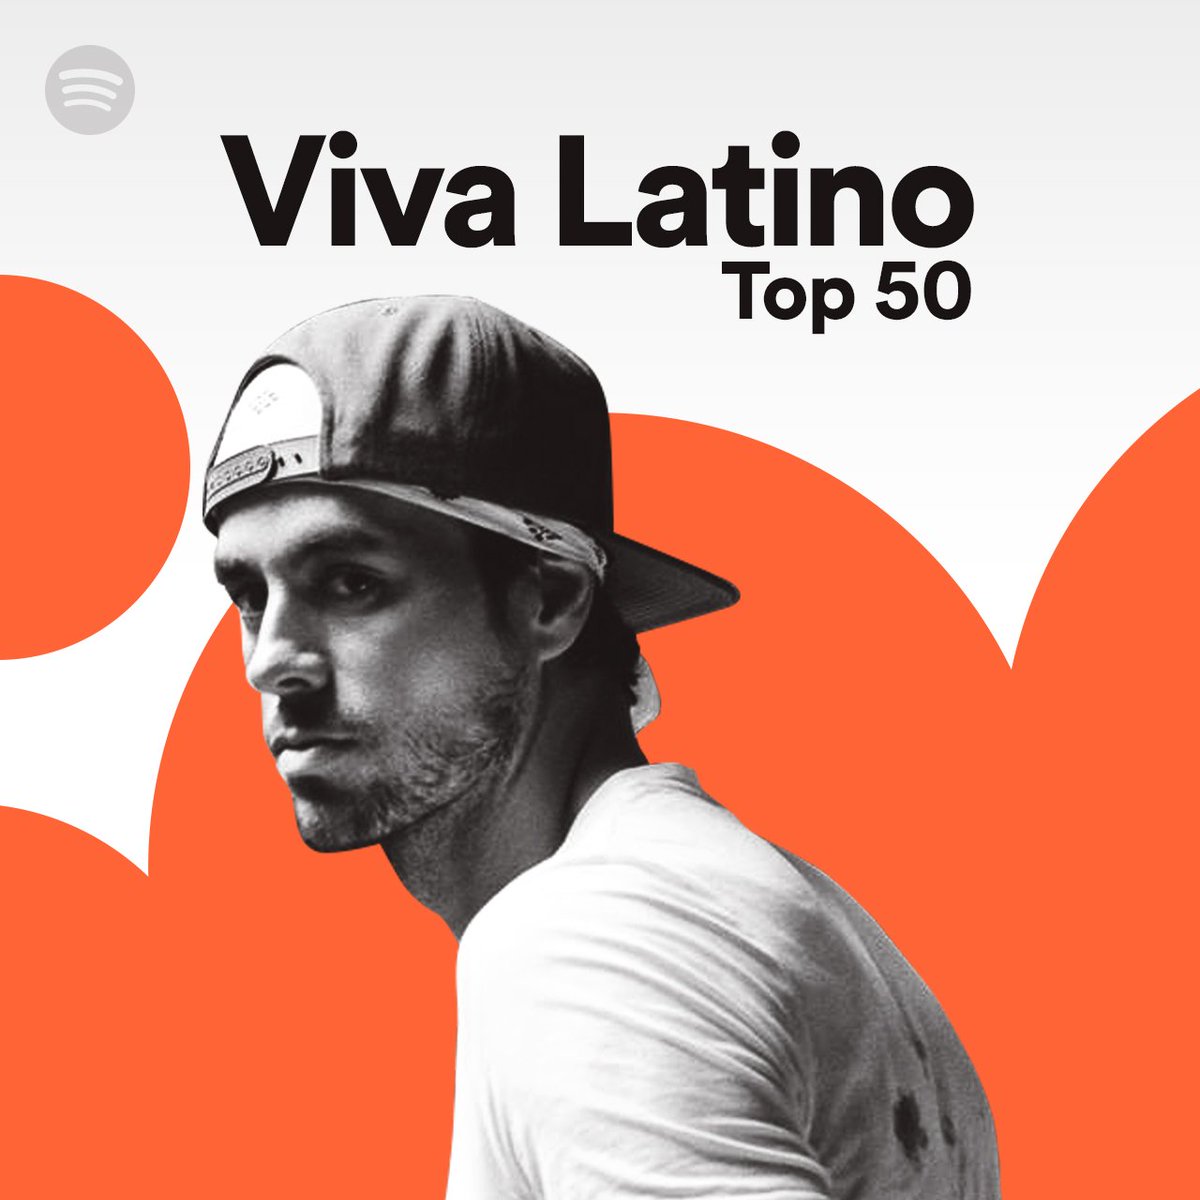 gracias @Spotify!!!! #VivaLatino https://t.co/ZWlKgmht7N https://t.co/zIWGnpJVsE